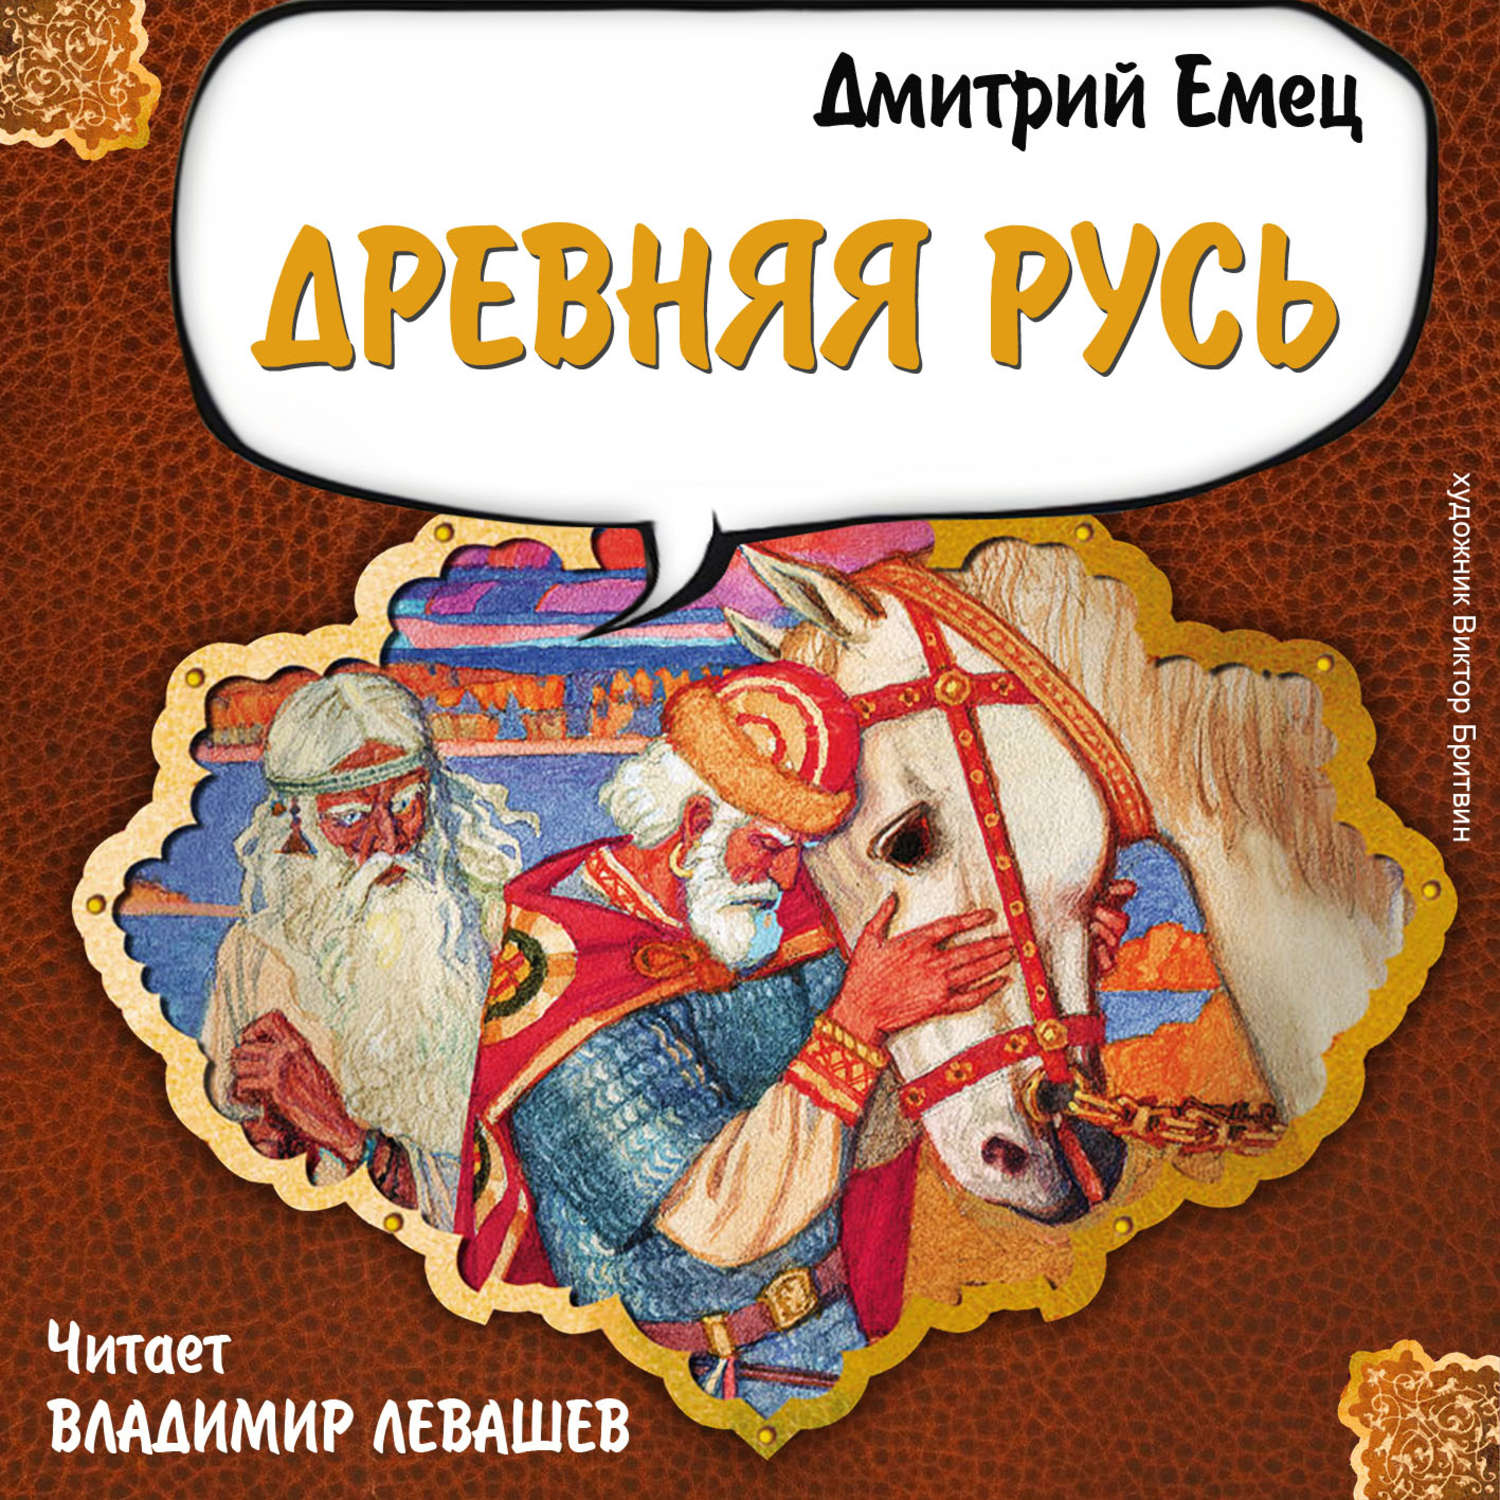 Аудиокниги слушать древние книги. Книги о древней Руси для детей.